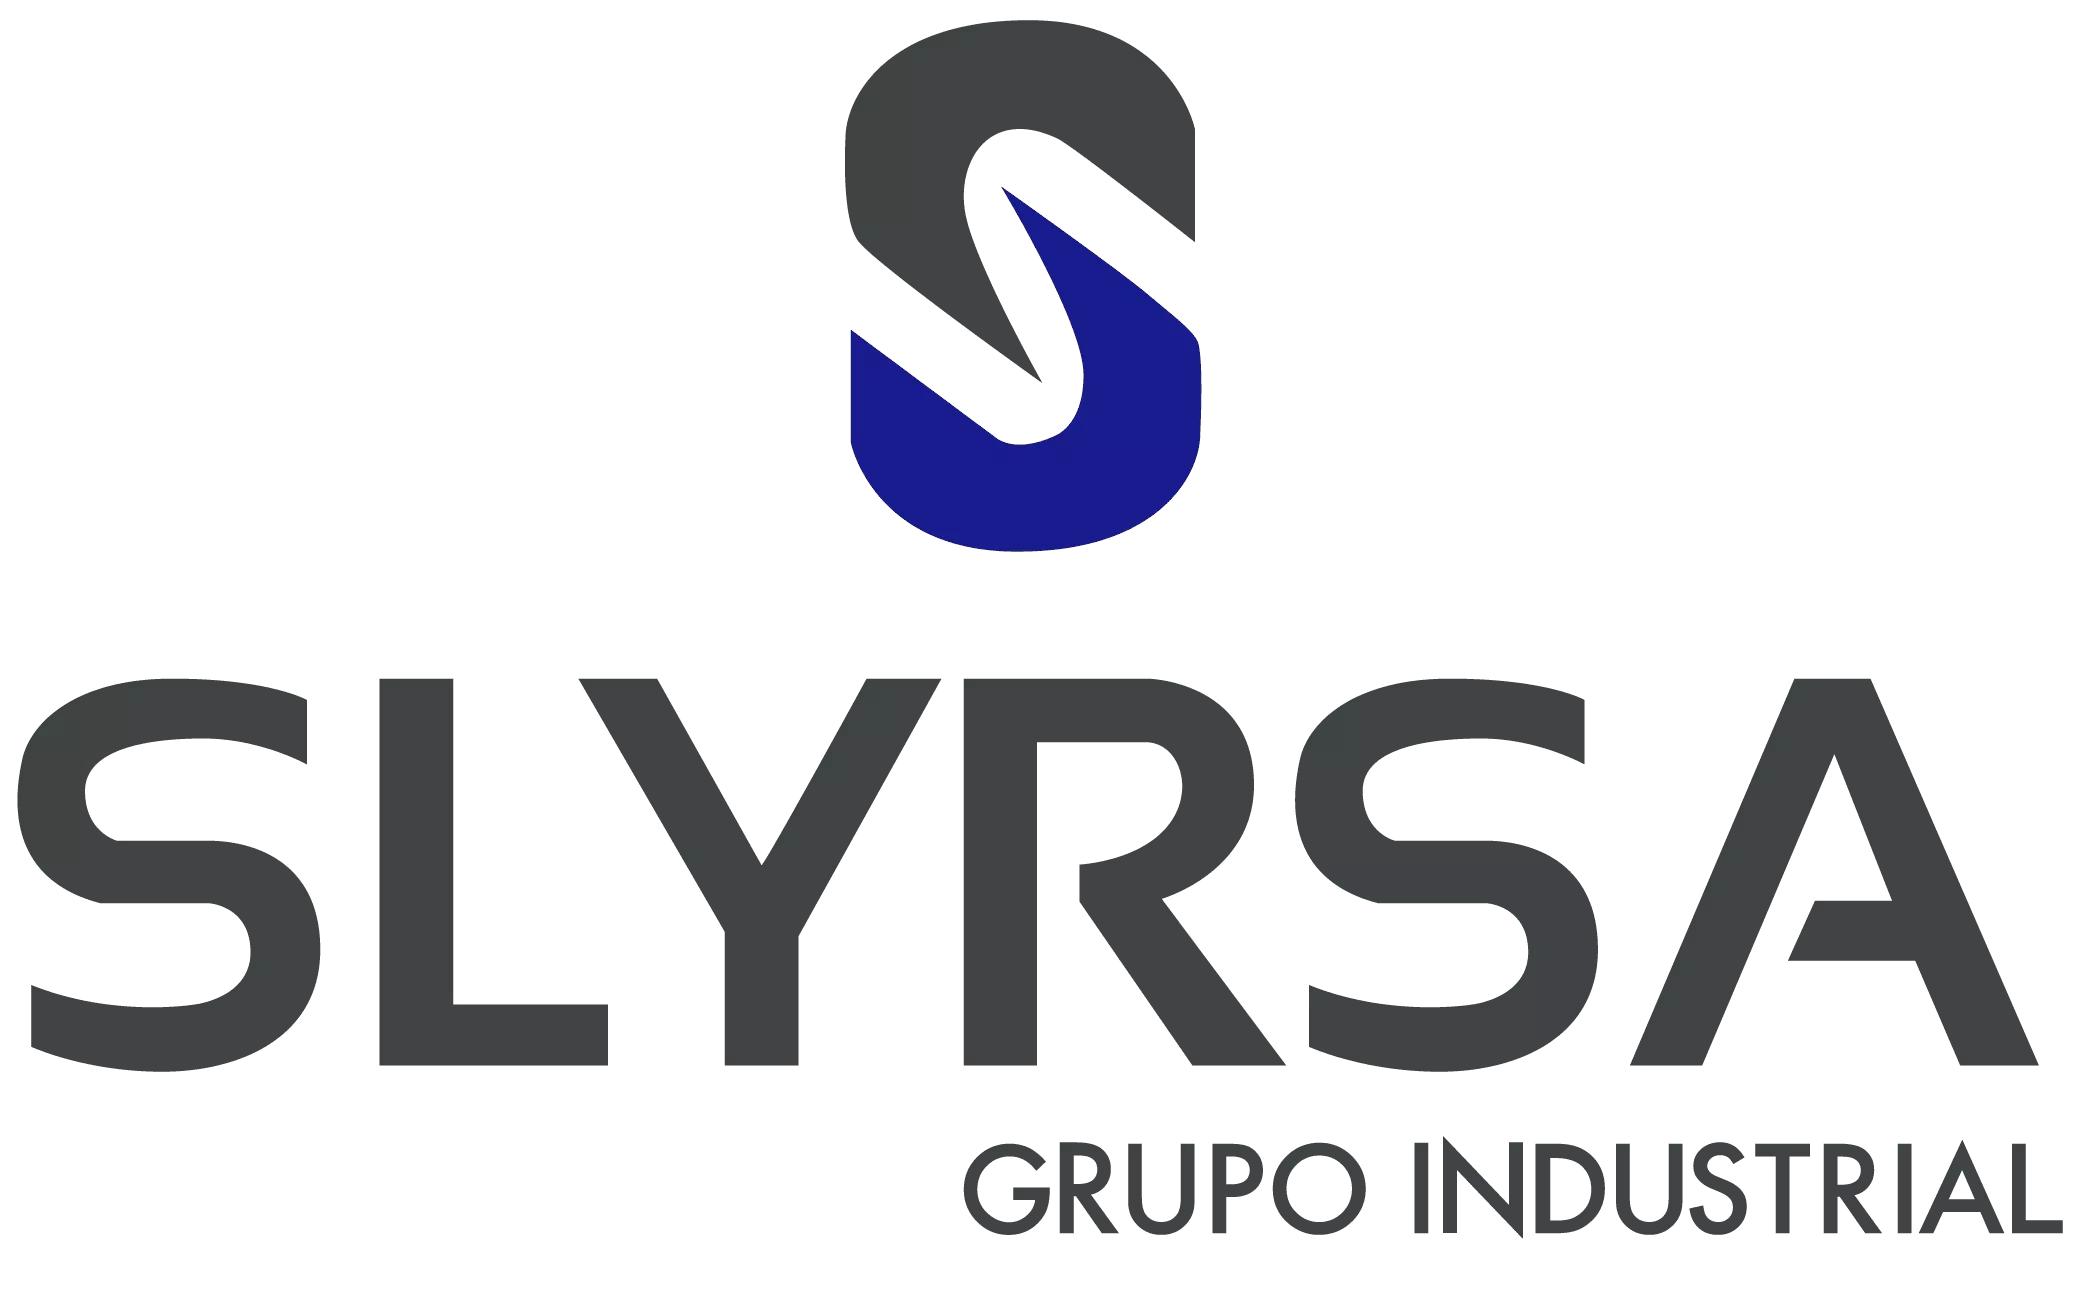 SLYRSA Grupo Industrial